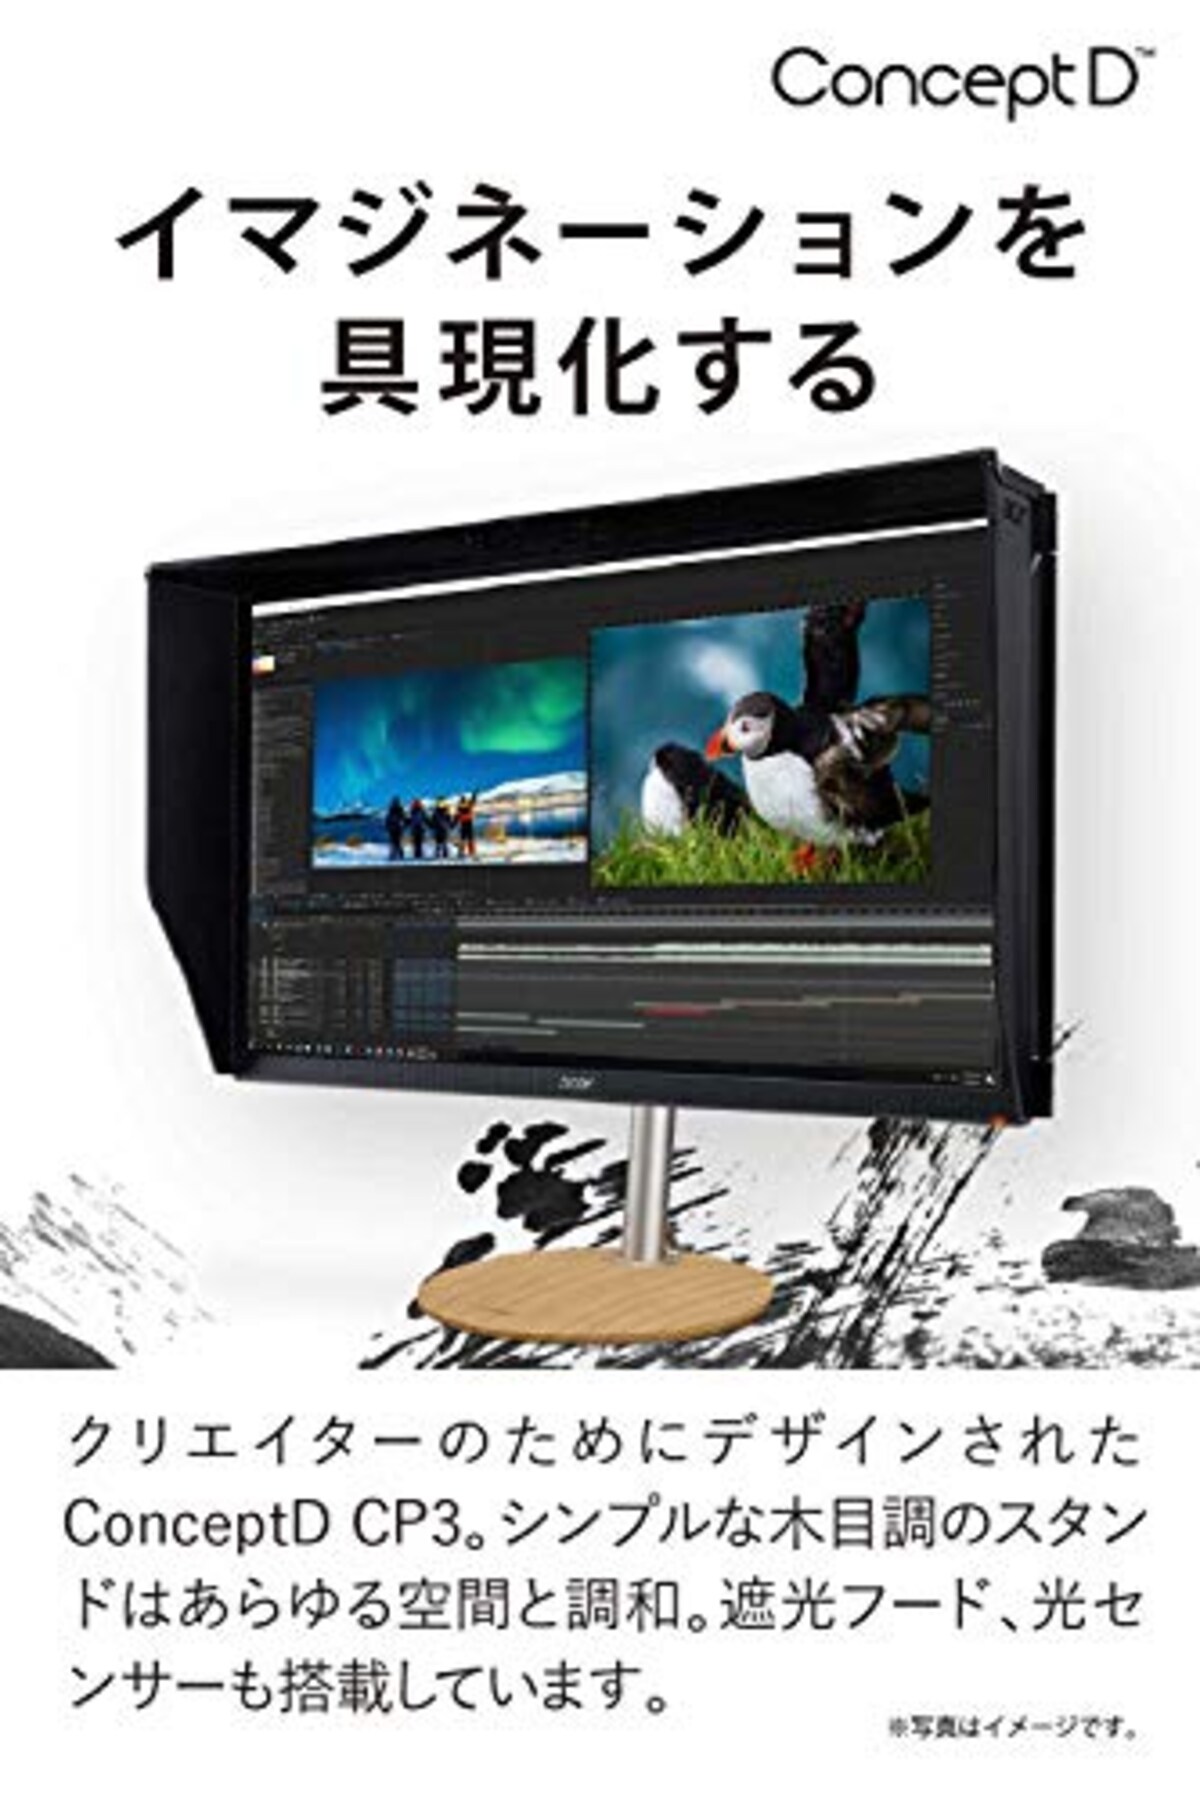  日本エイサー Acer公式 ノートパソコン モニター ConceptD CP3 CP3271KPbmiippruzx 4K UHD PANTONE認定、Delta E <1 クリエイター向け画像2 